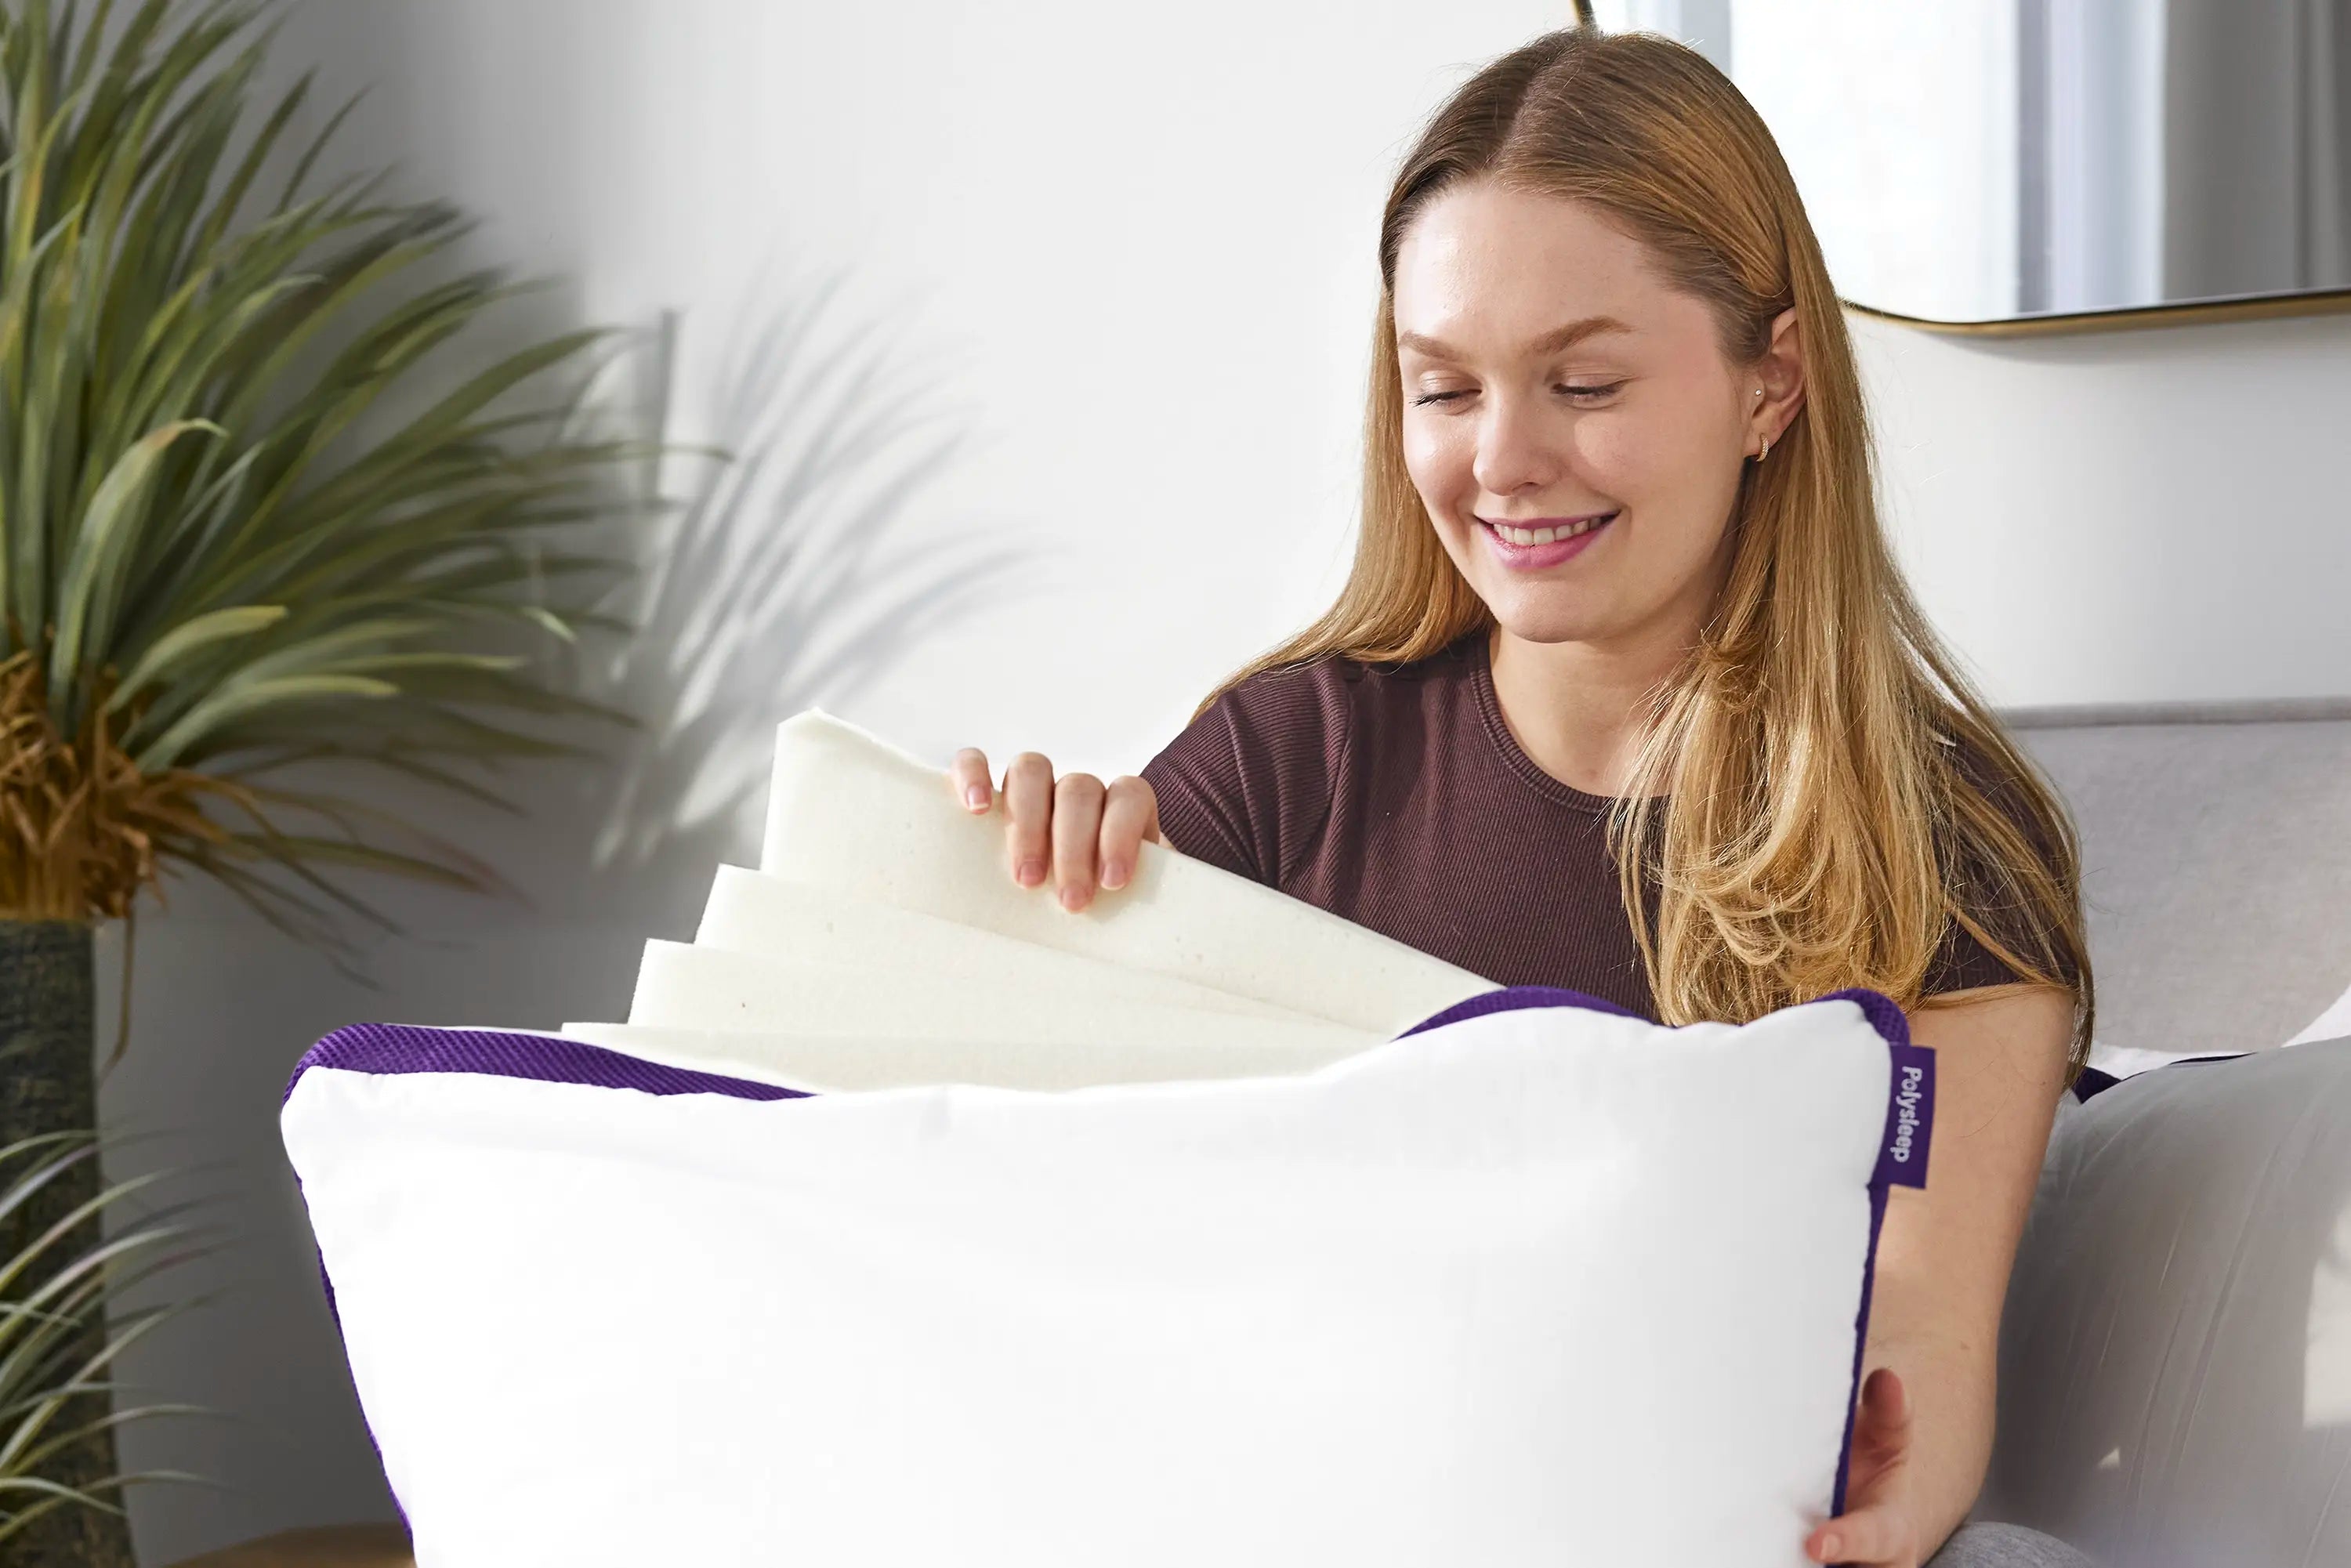 Polysleep Pillow - 100% Customizable Pillow